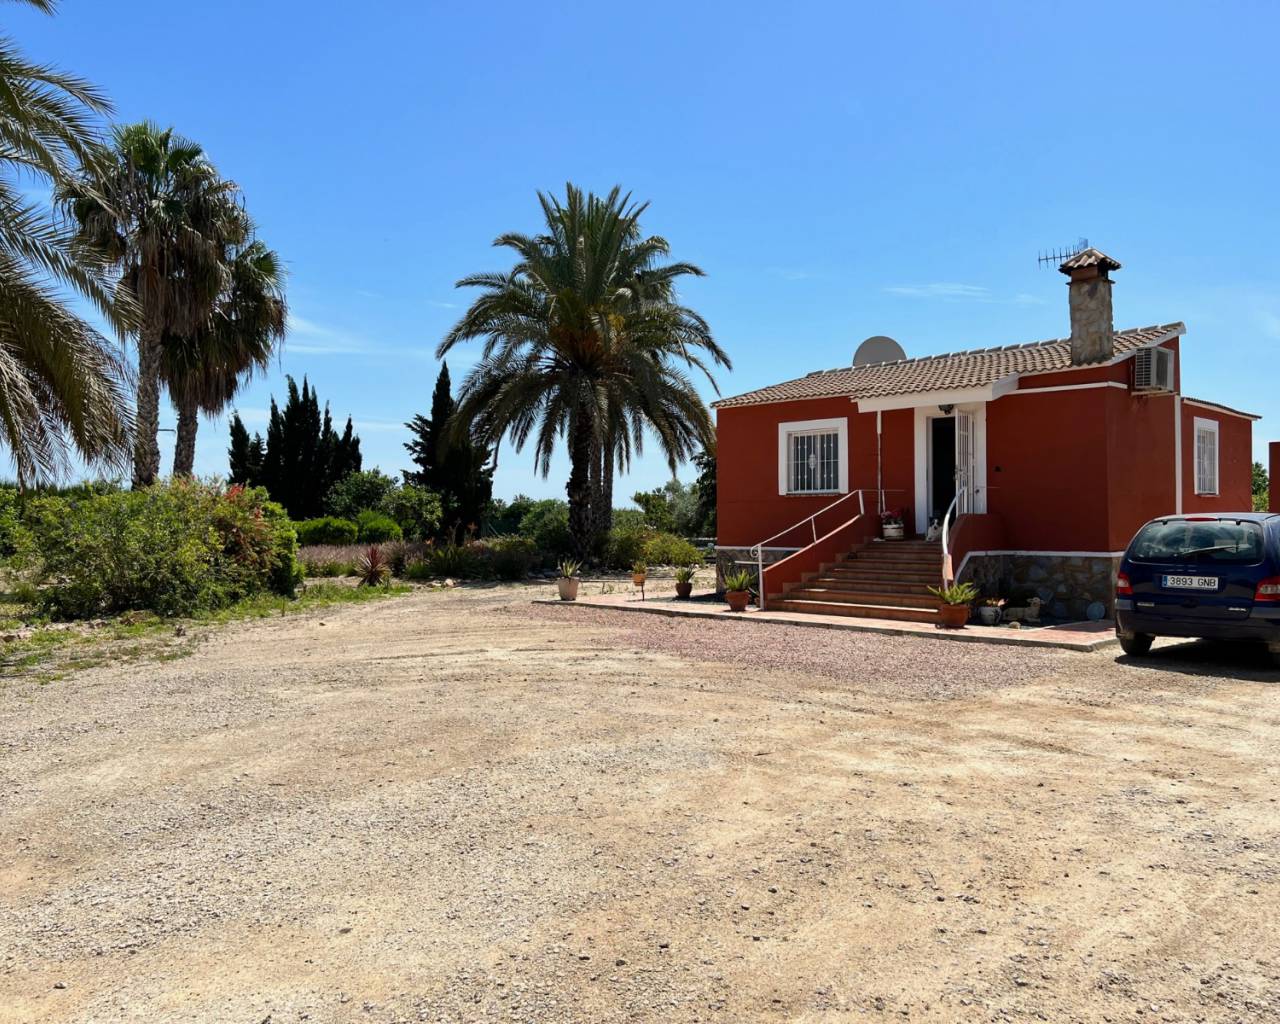 Finca - Country Property - Resale - San Miguel de Salinas - San Miguel de Salinas